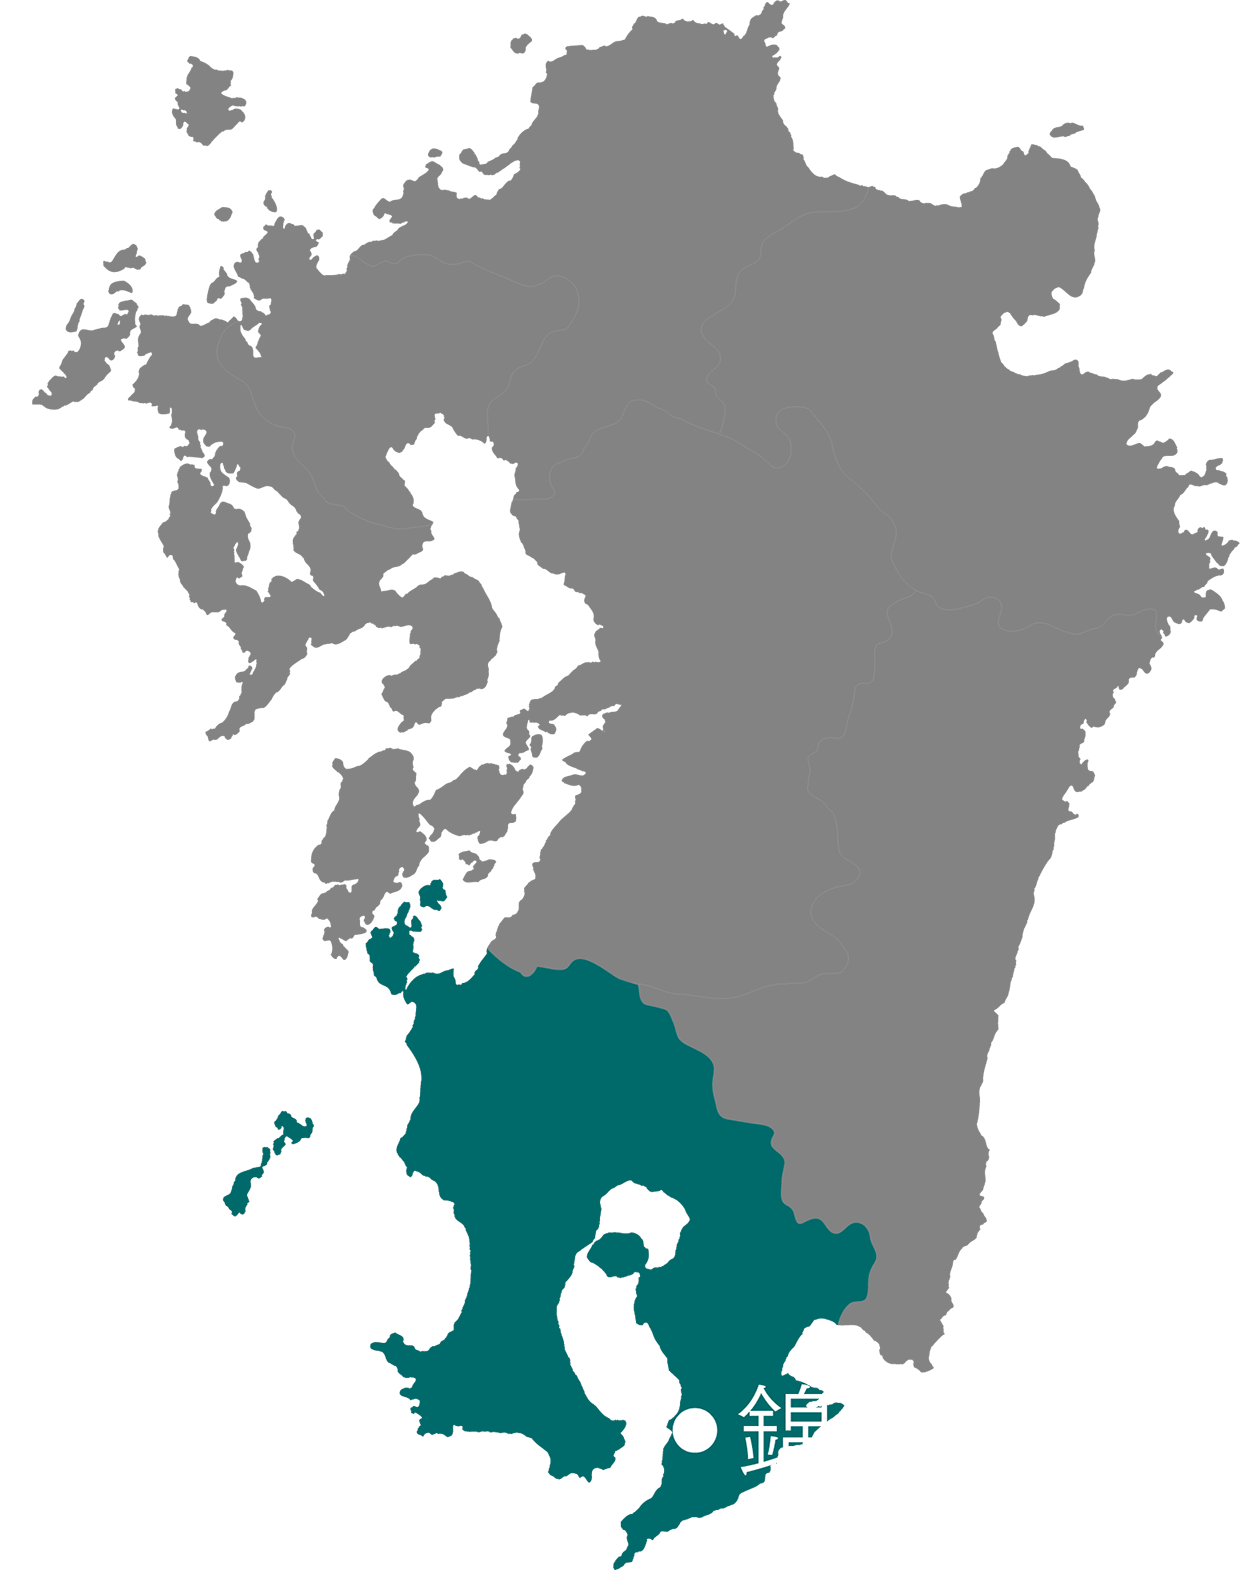 鹿児島県の錦江町を示す九州の地図